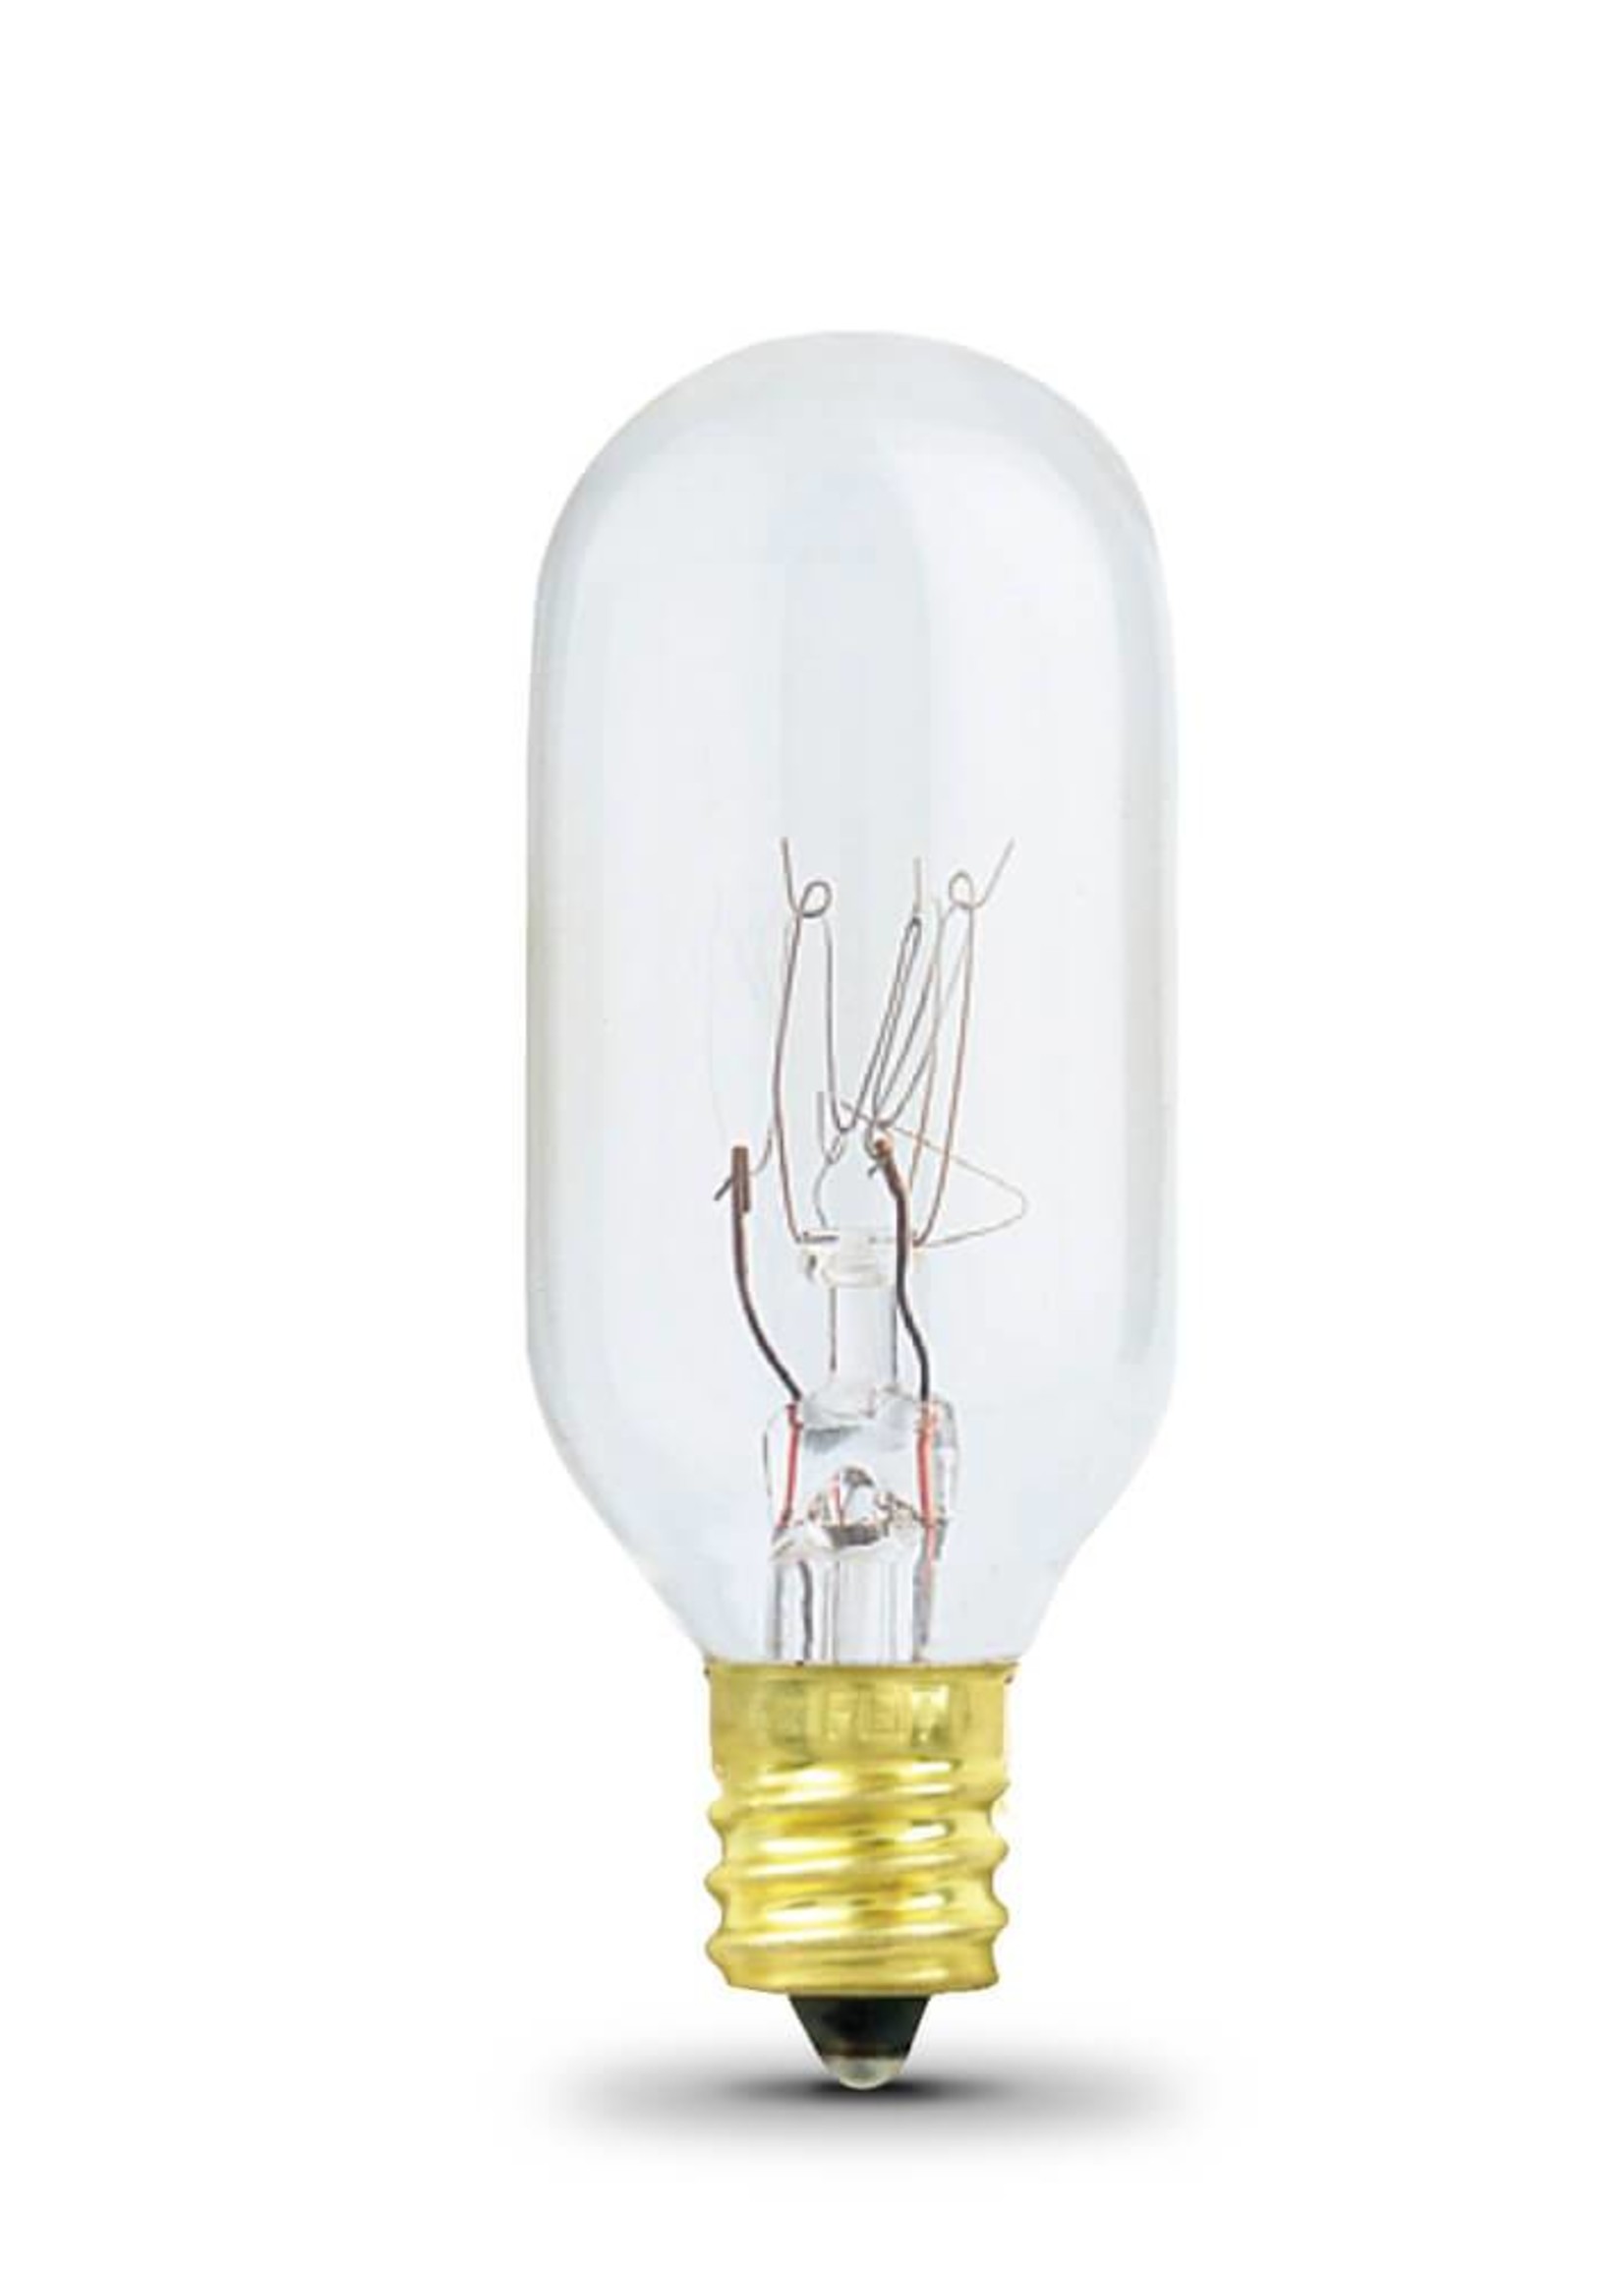 15-Watt Incandescent Lightbulb for Salt Lamp